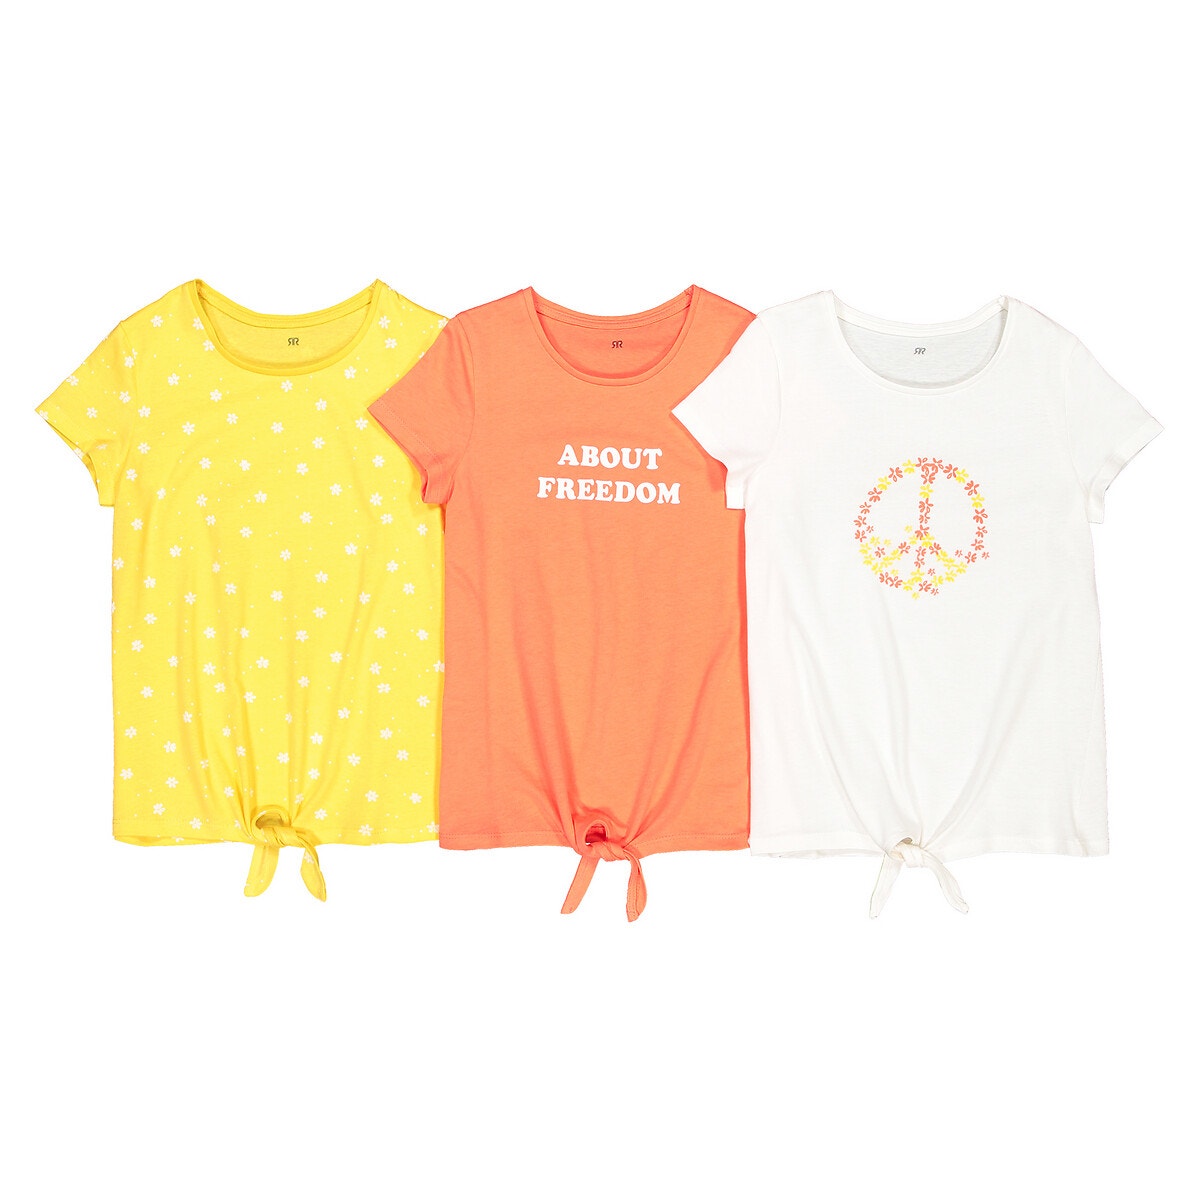 ΠΑΙΔΙ | Μπλούζες & Πουκάμισα | T-shirts Σετ 3 κοντομάνικες μπλούζες με φιόγκο μπροστά, 3-12 ετών